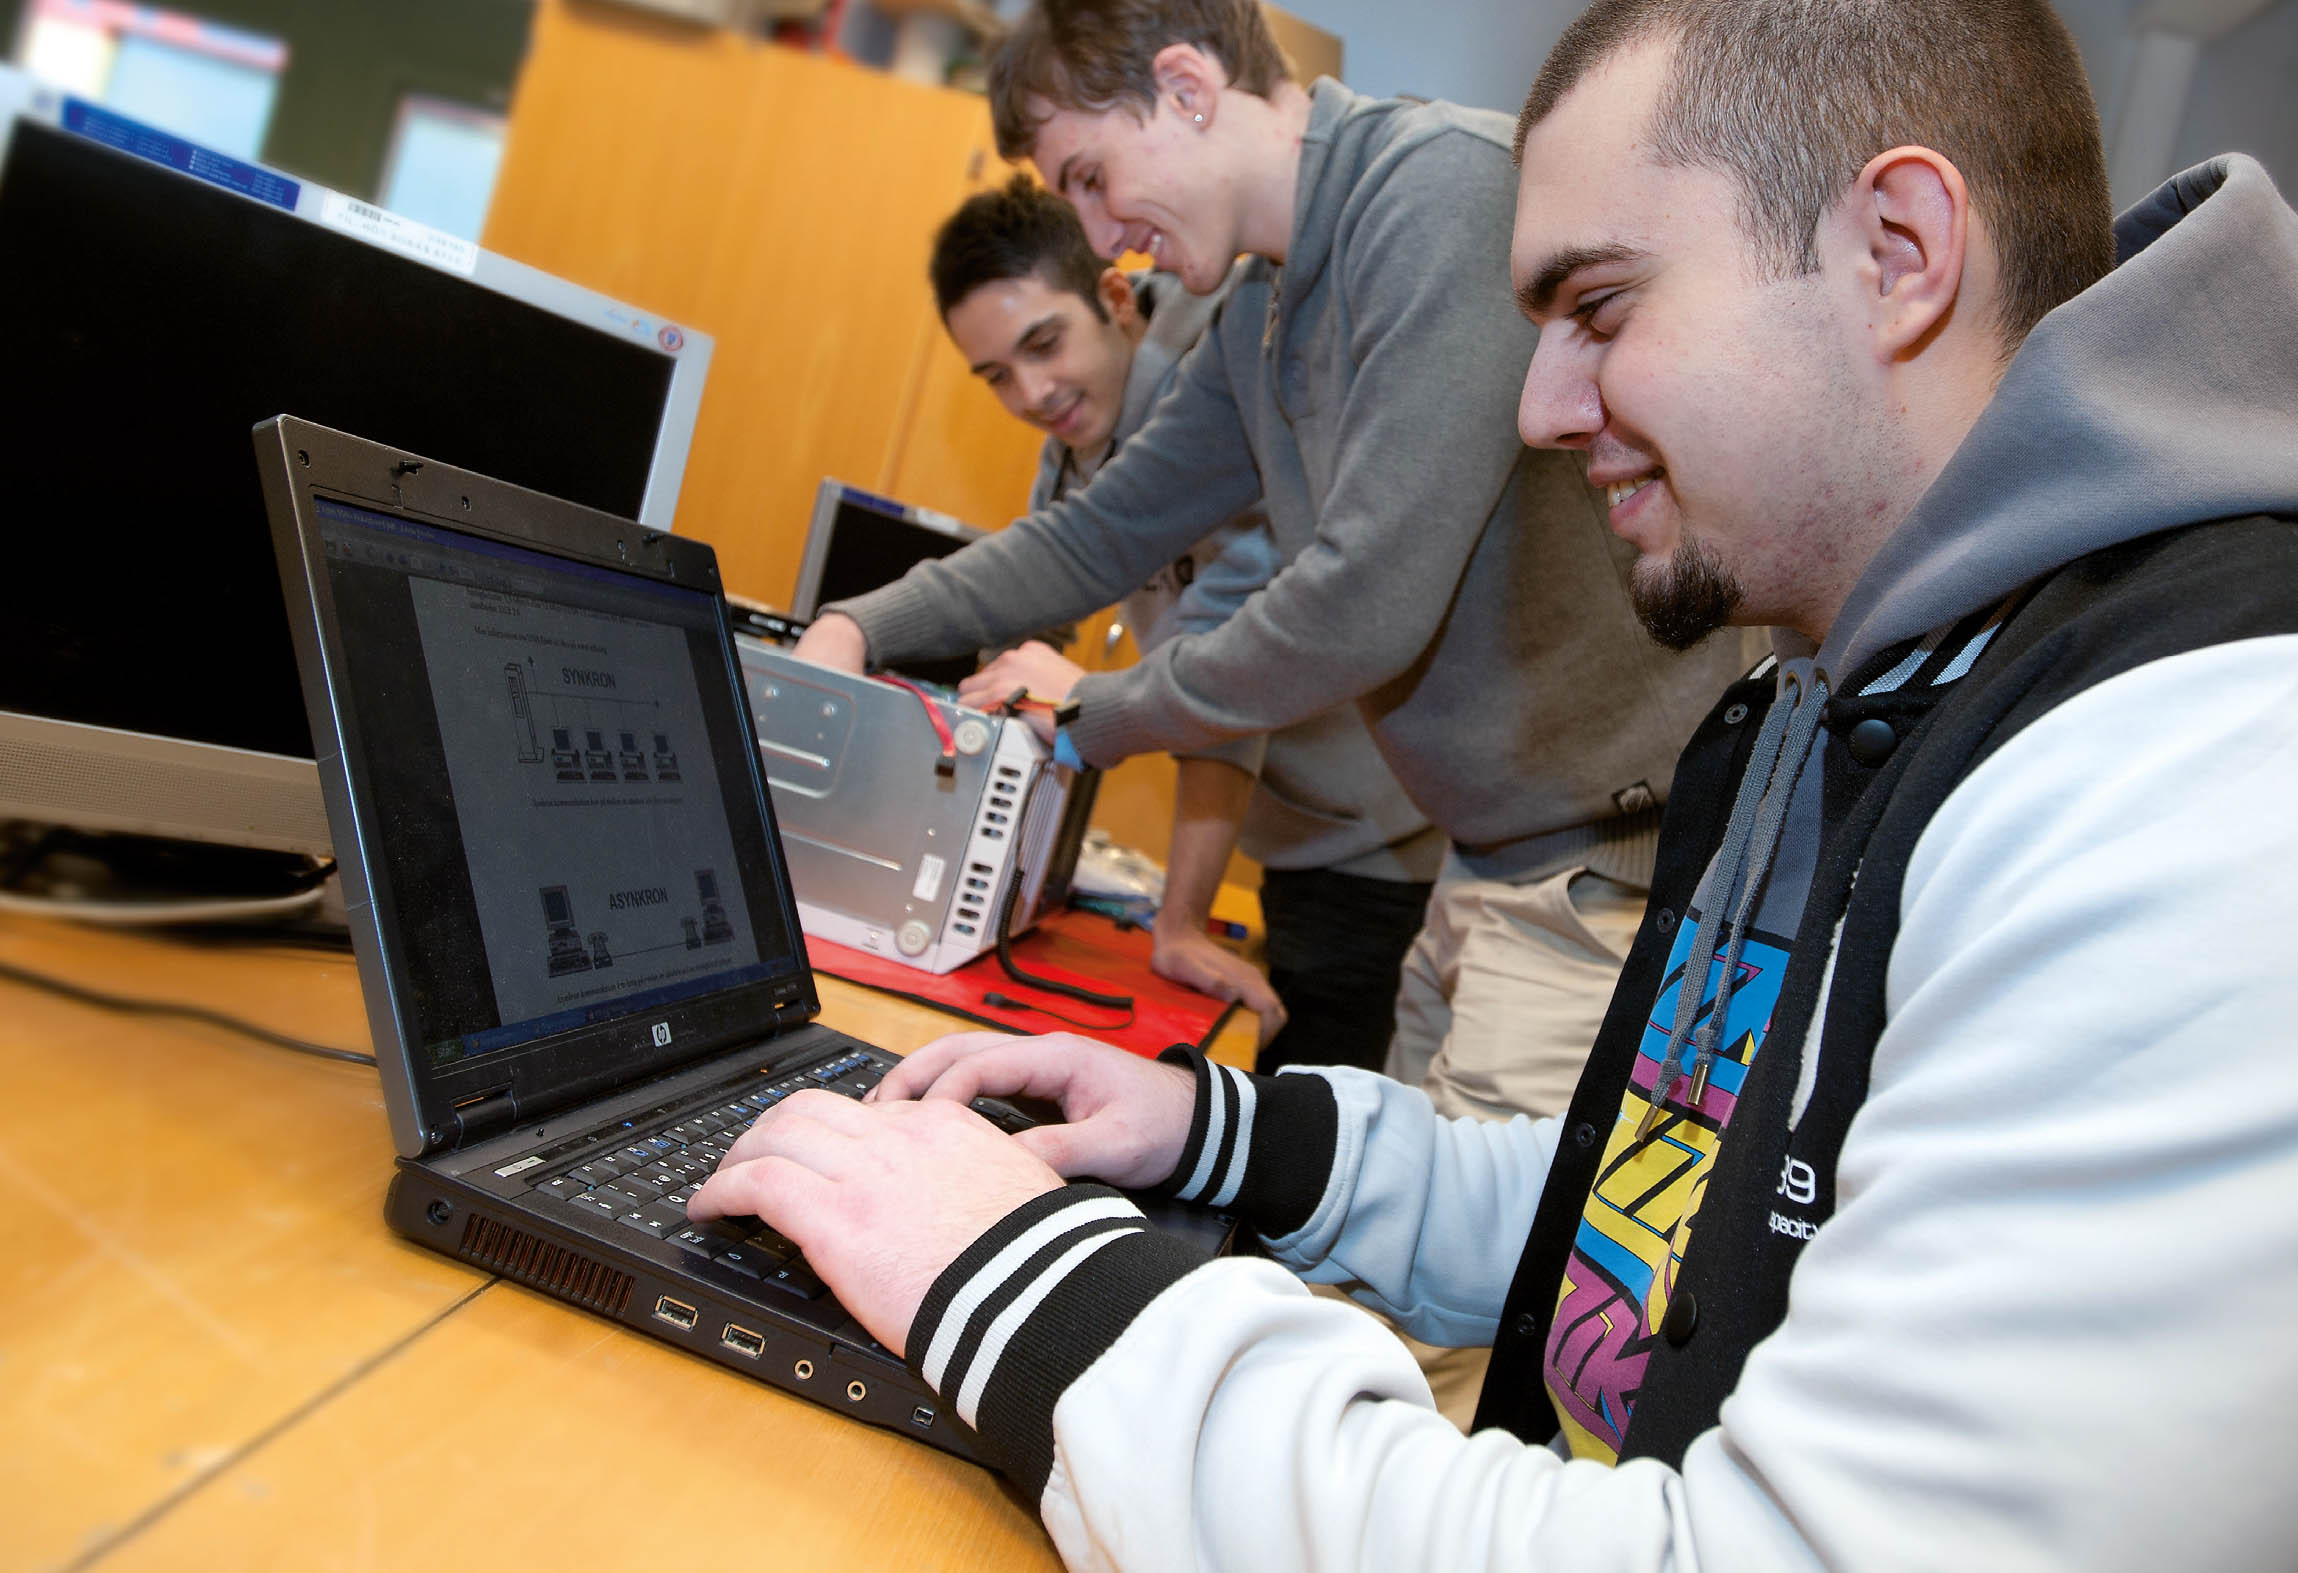 En elev använder en laptop och två elever arbetar med elektroniken i en dator